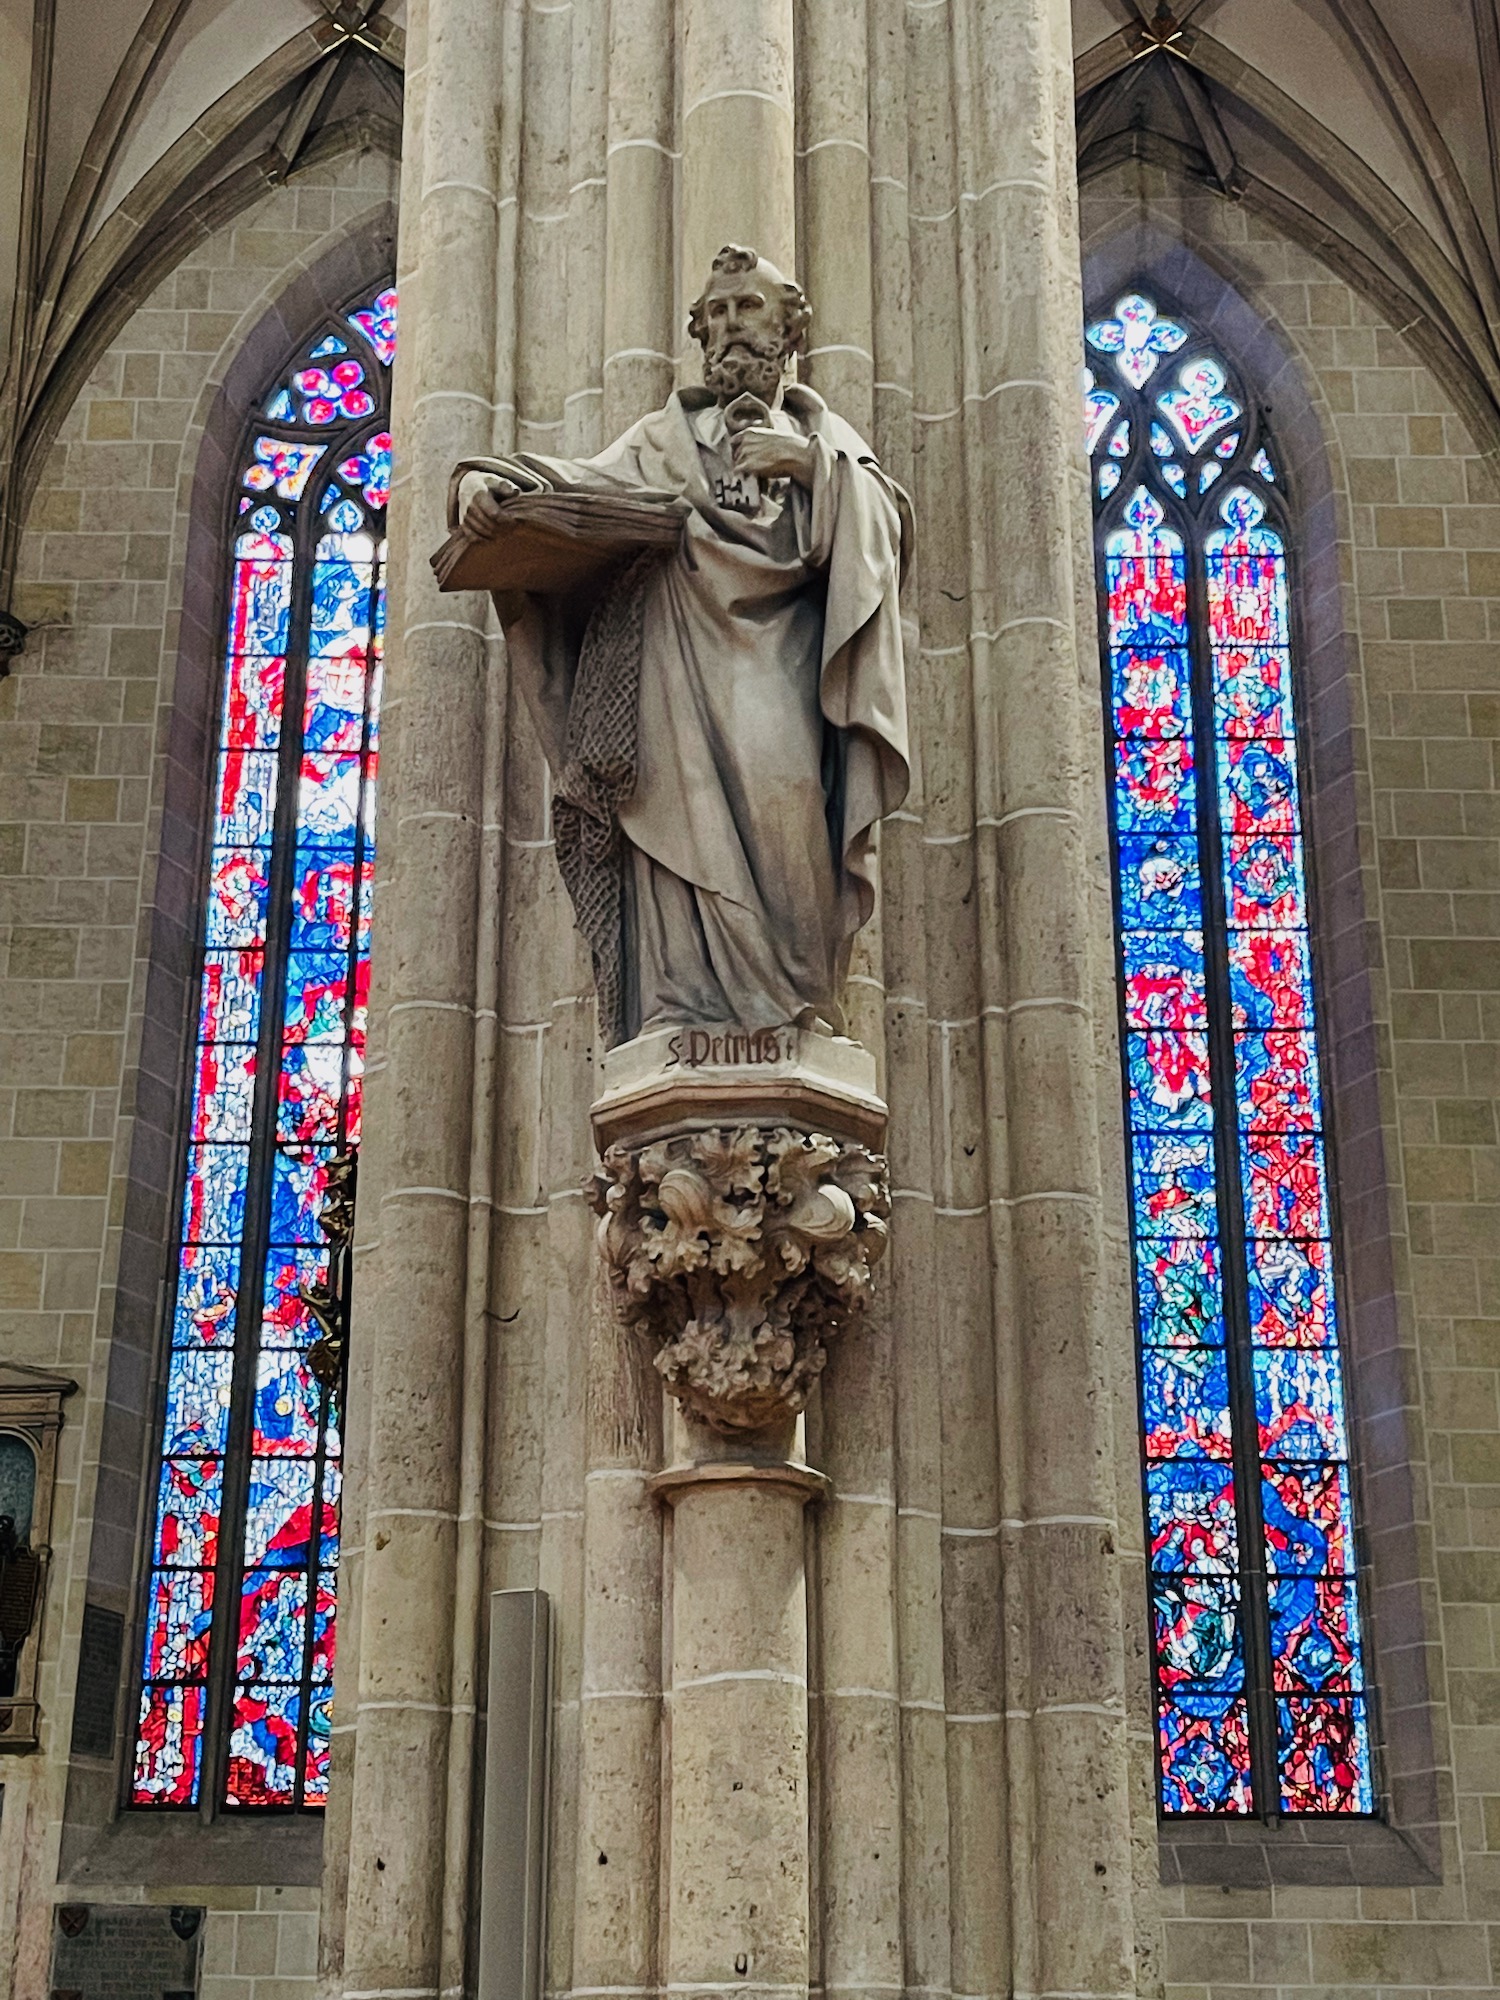 a statue of a man in a church